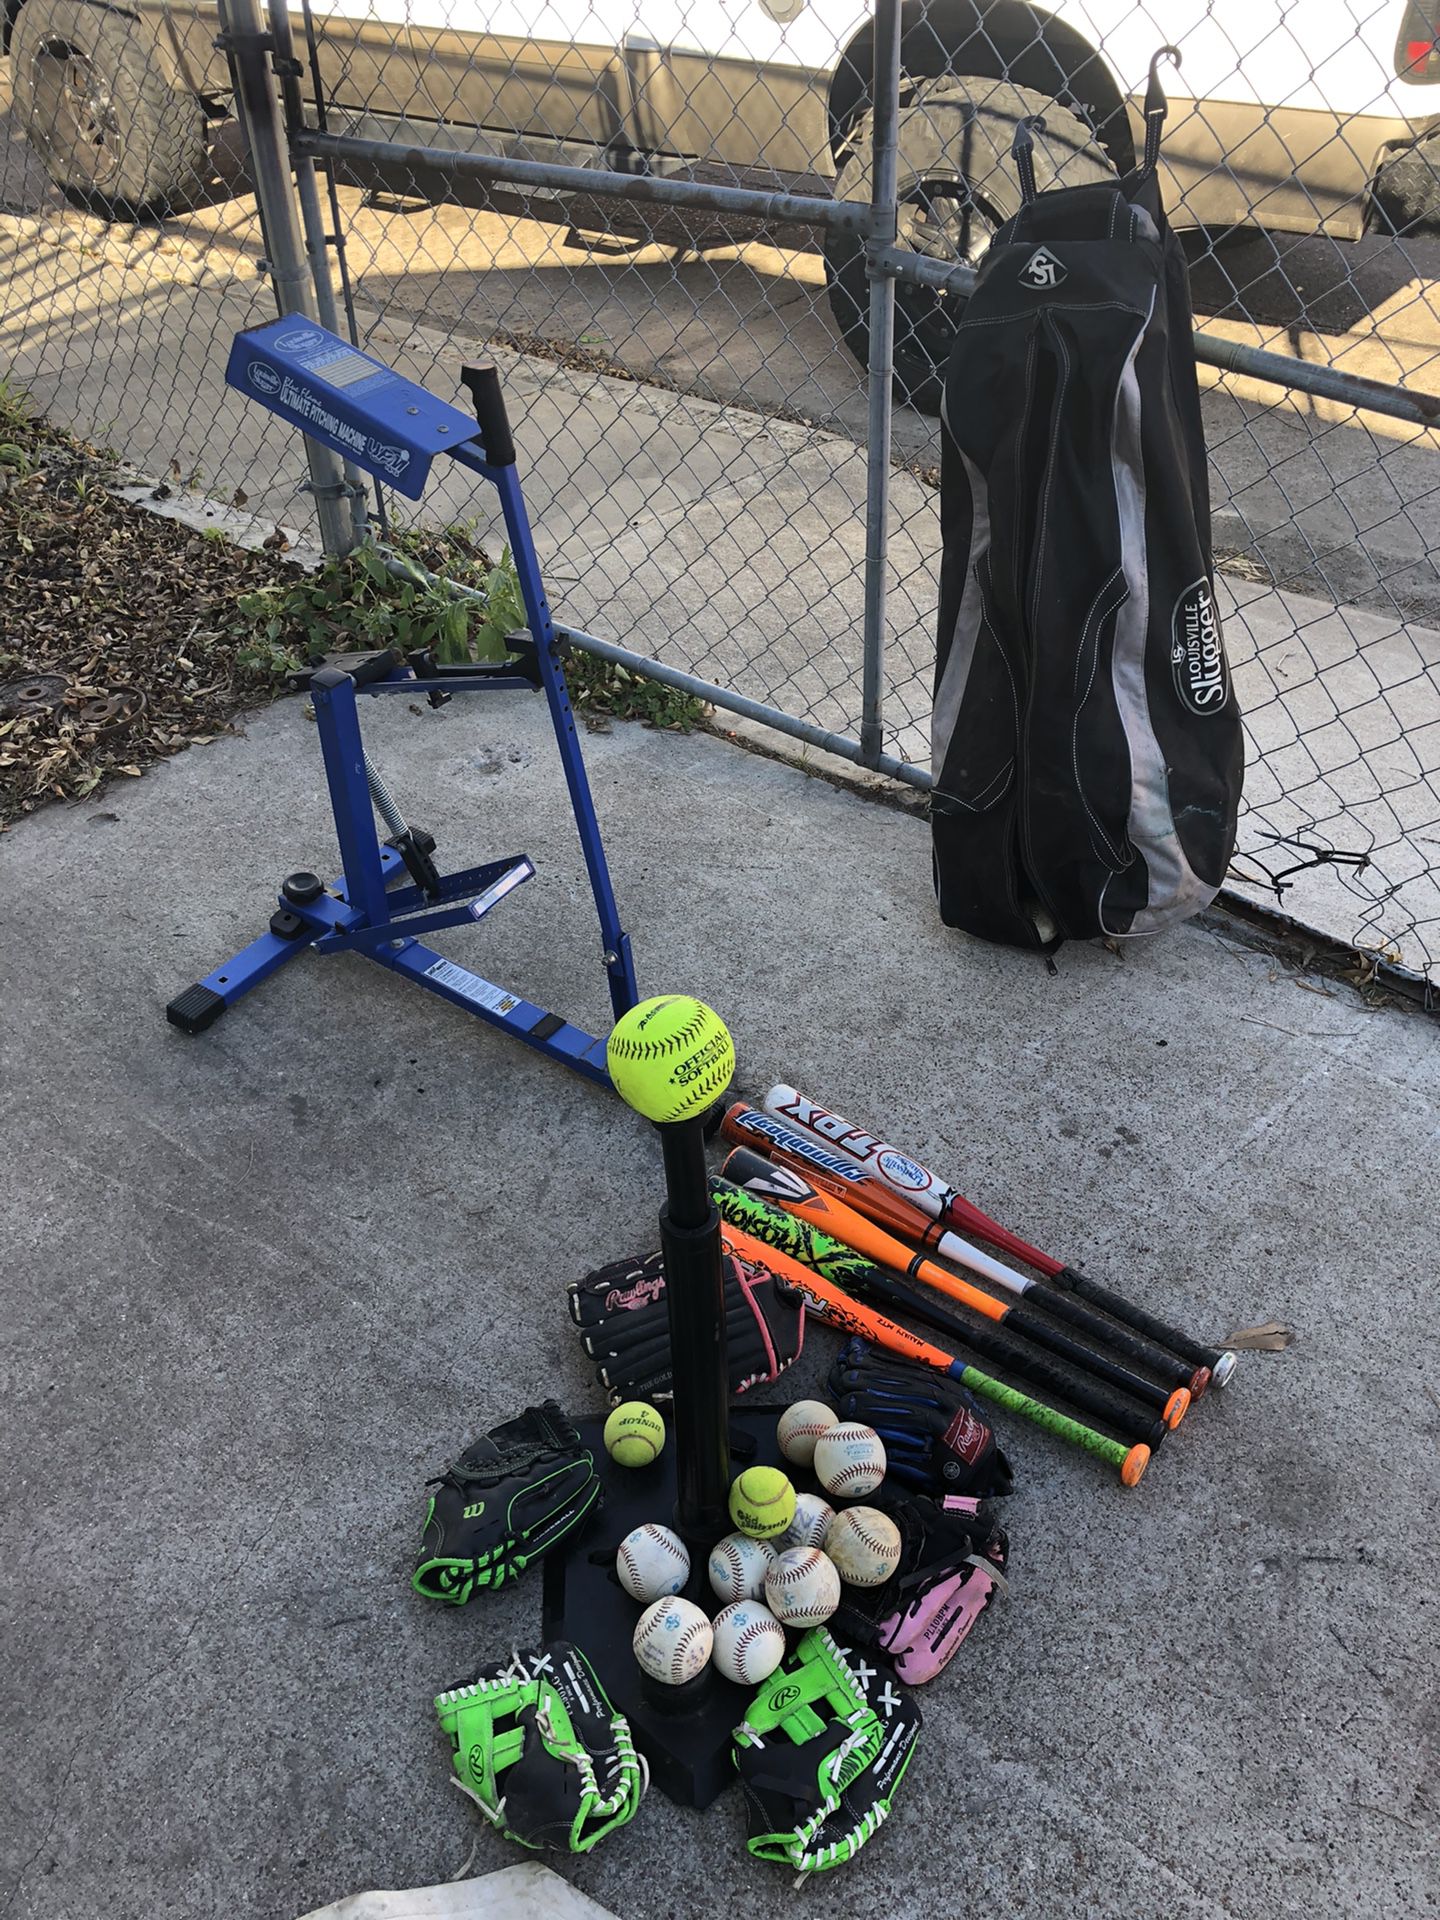 Little League Baseball Equipment 